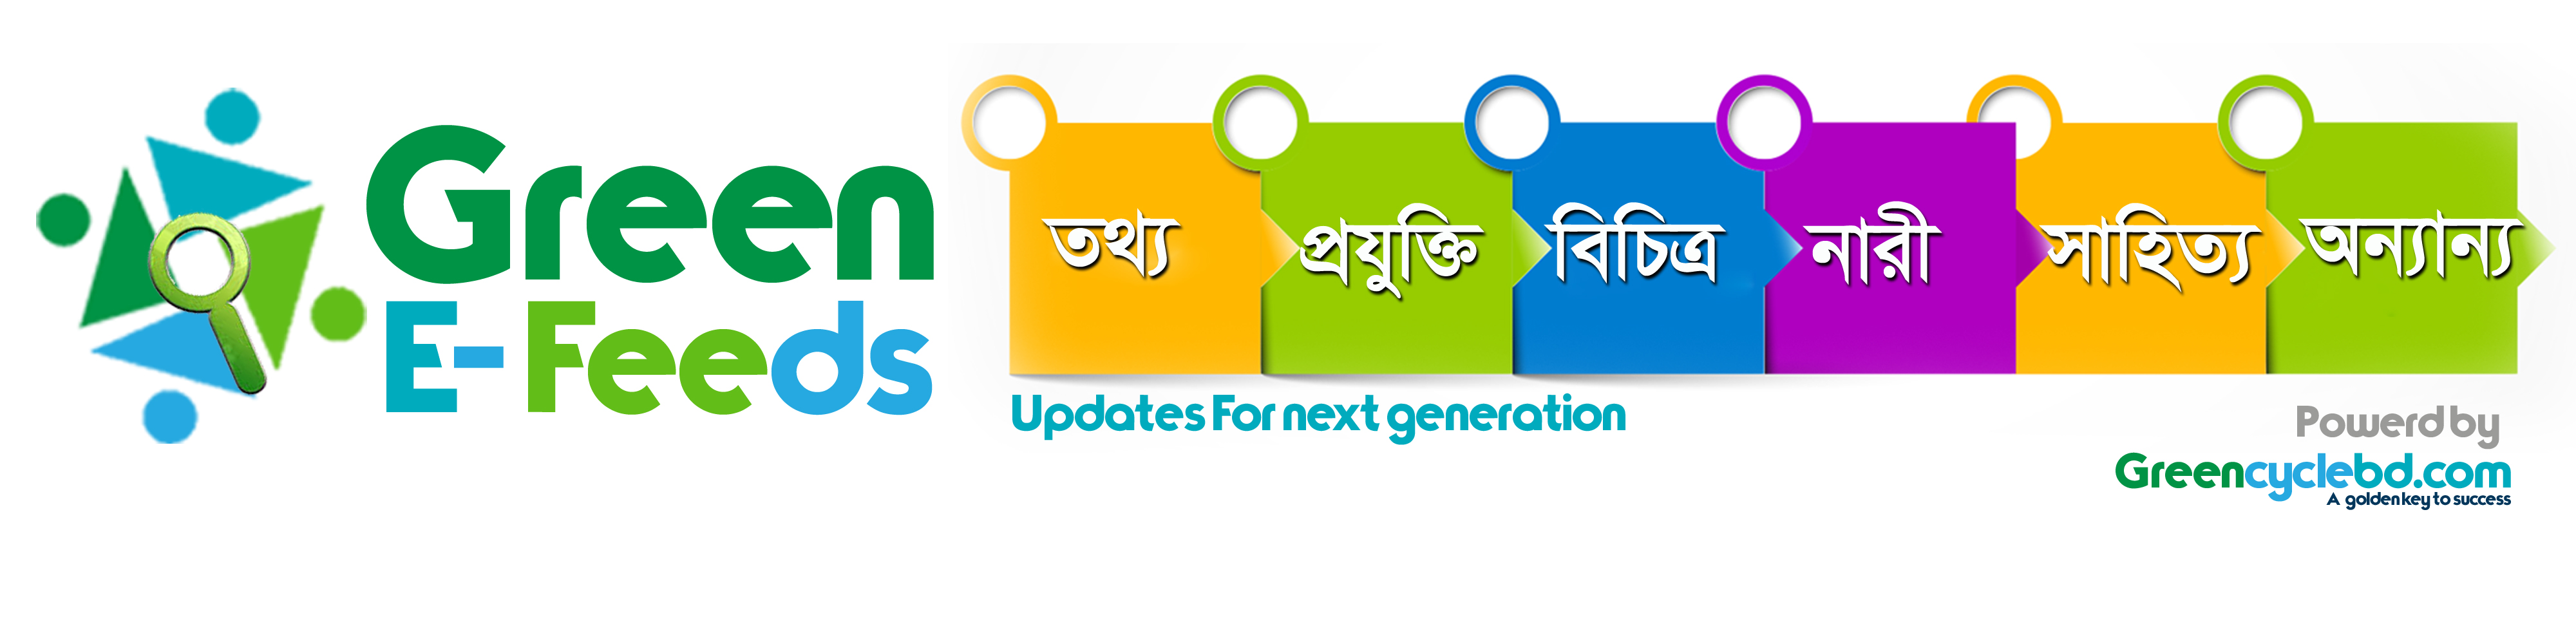 গ্রীন ই-ফিডস- Updates for next Generation